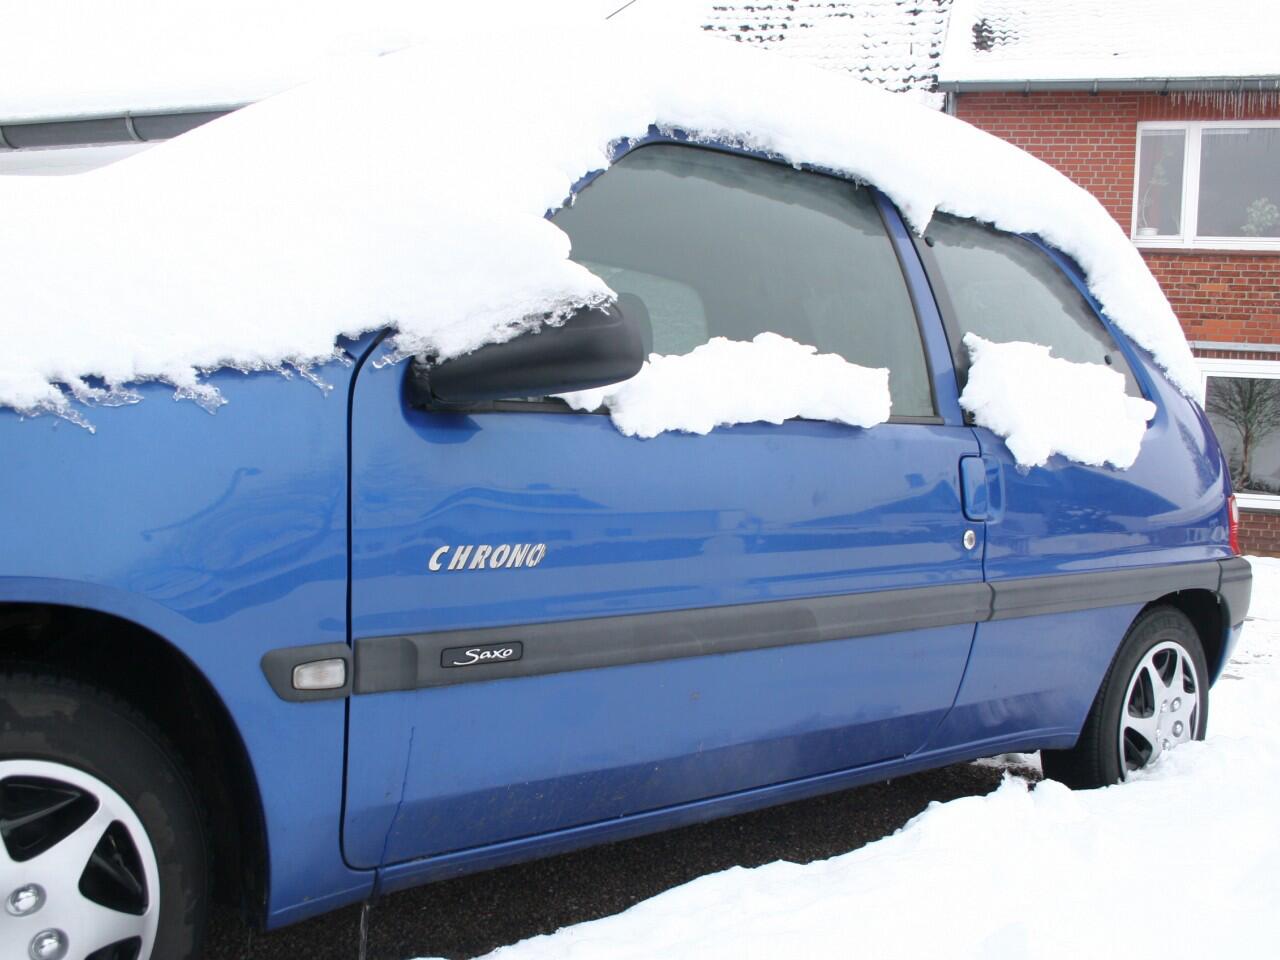 Schnee auf dem Auto: Wer nicht fegen mag, nimmt Strafen in Kauf | GMX